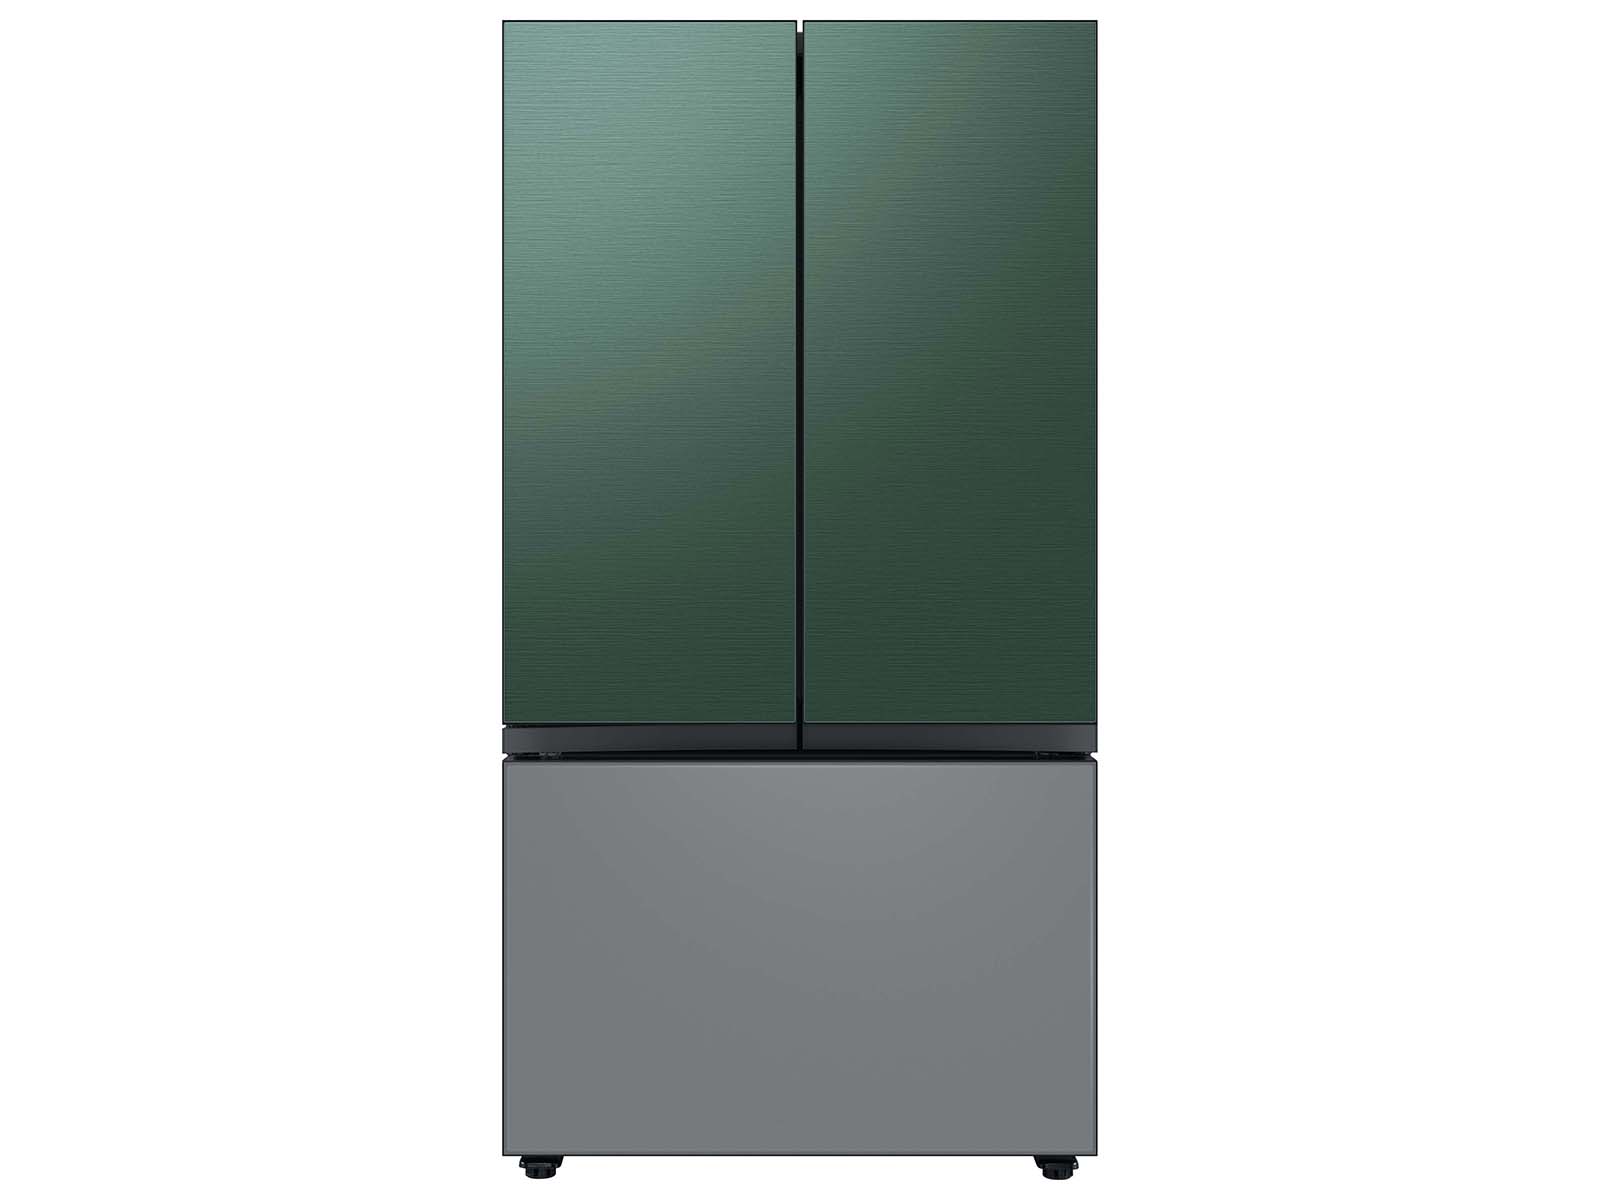 Thumbnail image of Bespoke 3-Door French Door Refrigerator Panel in Emerald Green Steel - Top Panel